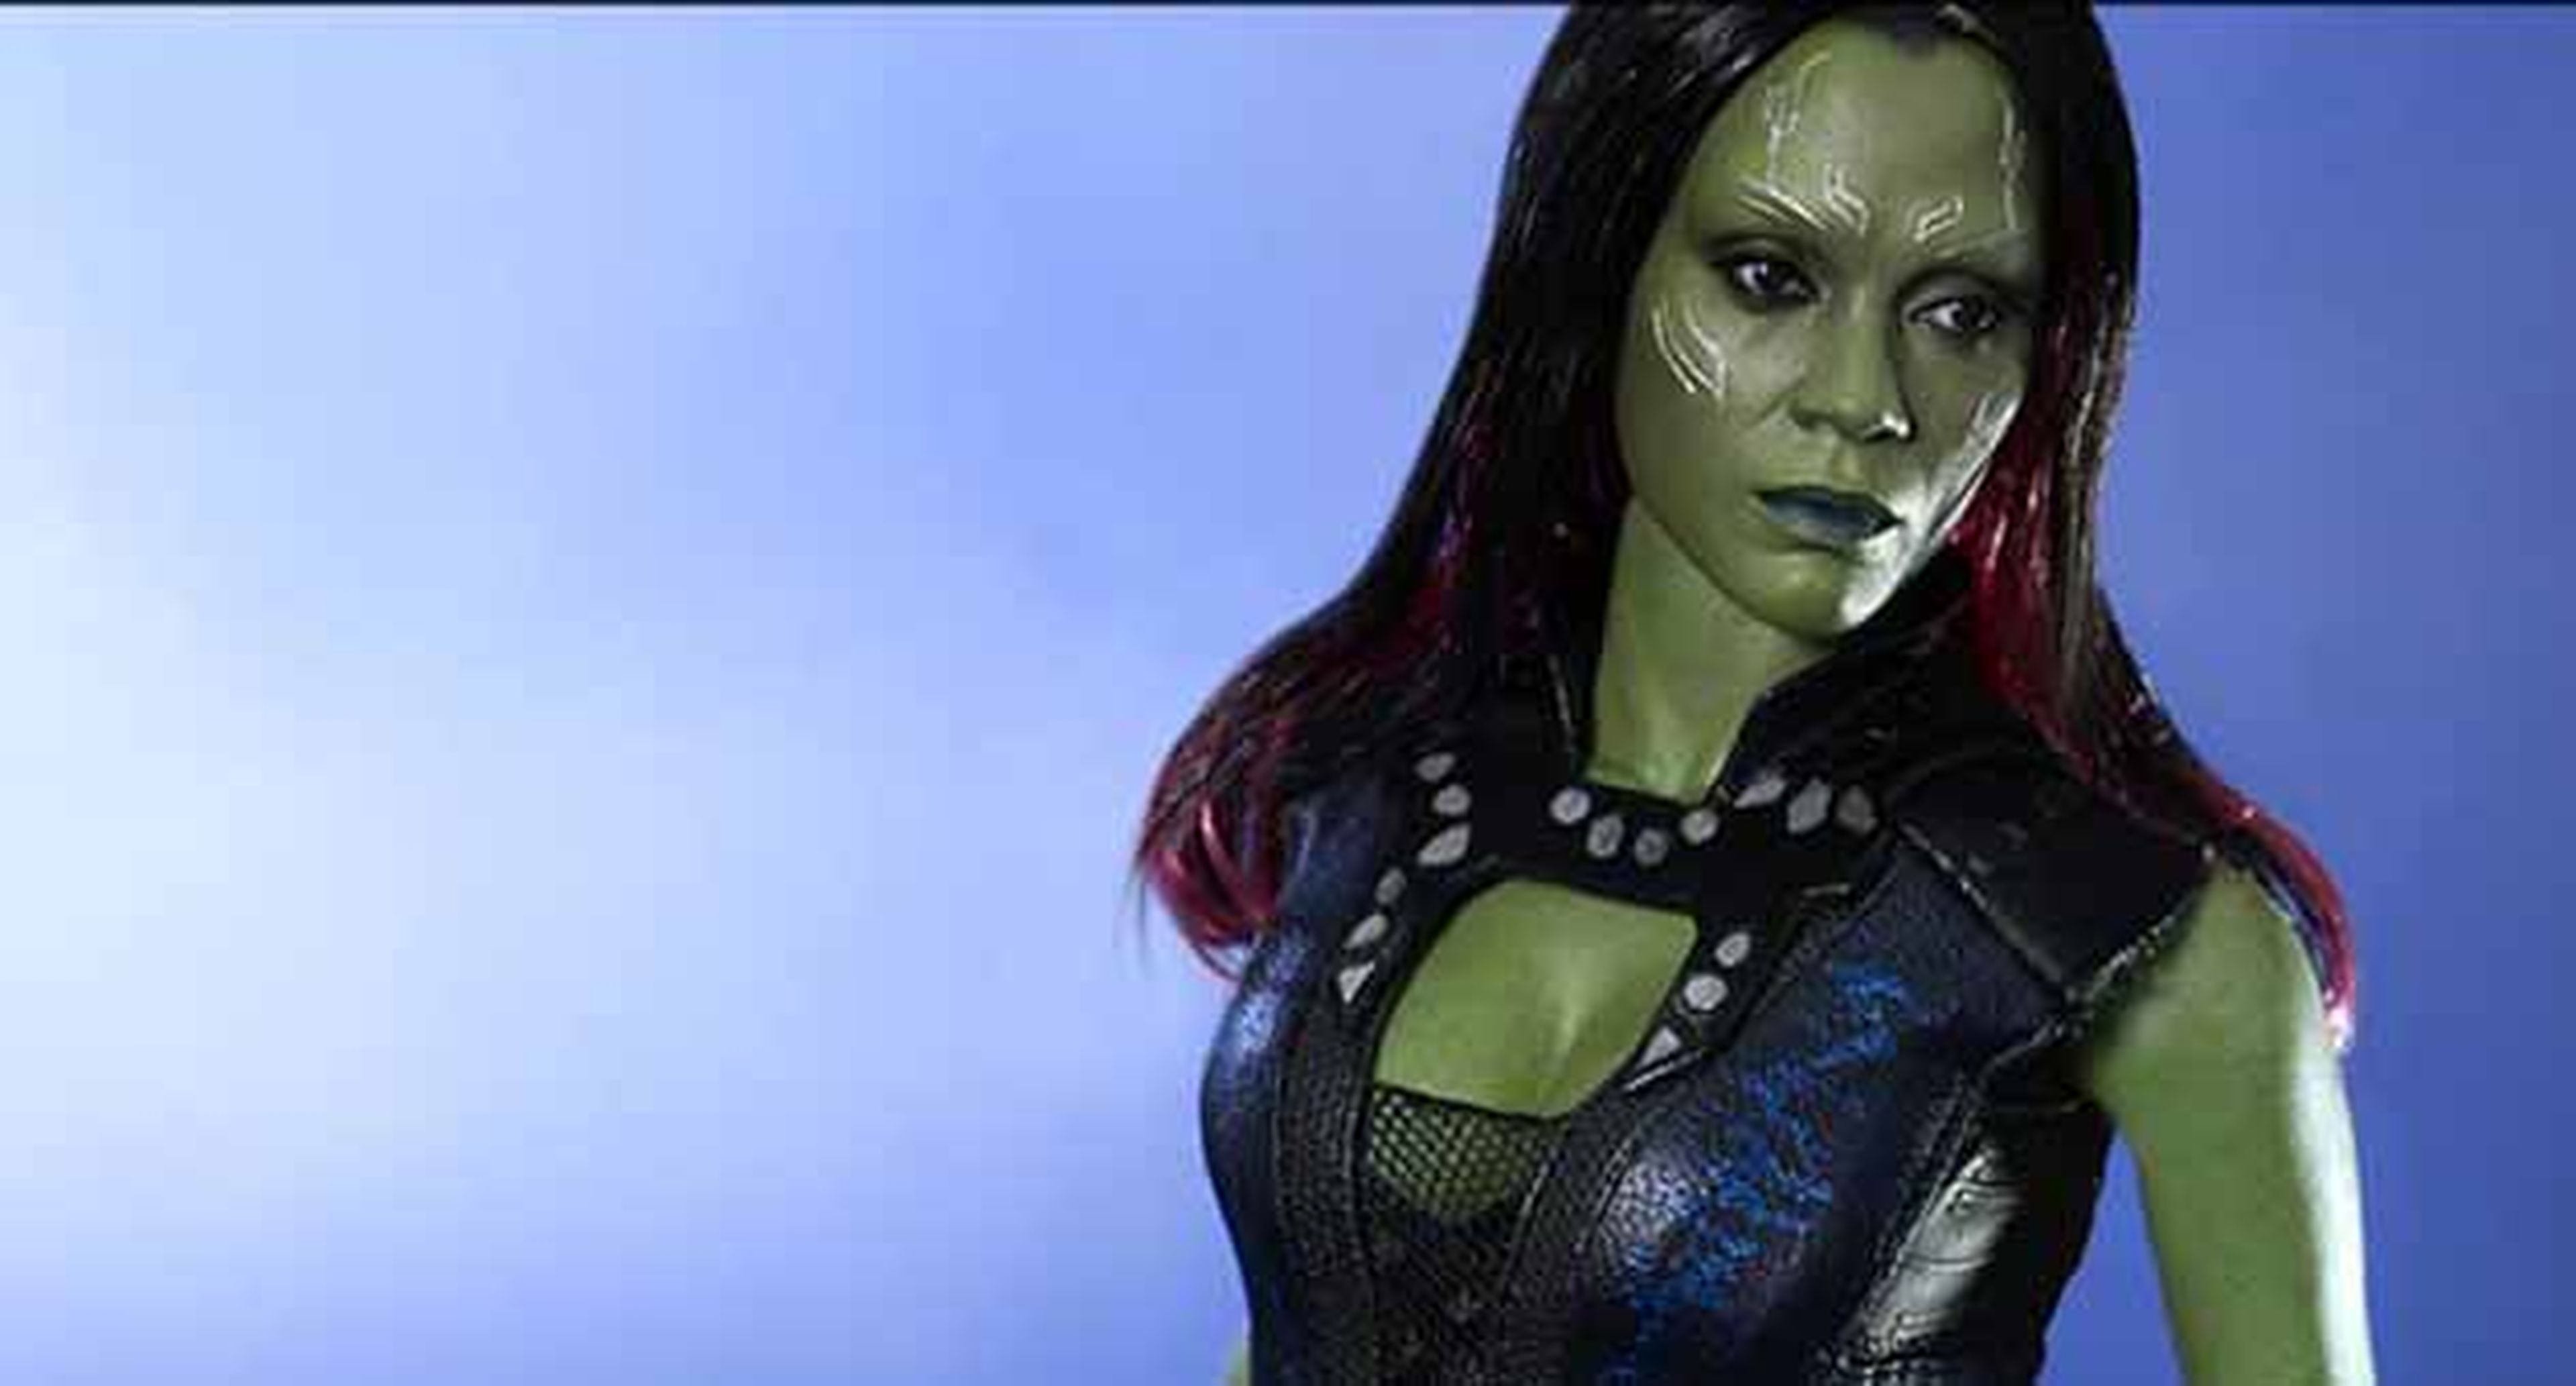 Hot Toys revela su Gamora de Guardianes de la Galaxia